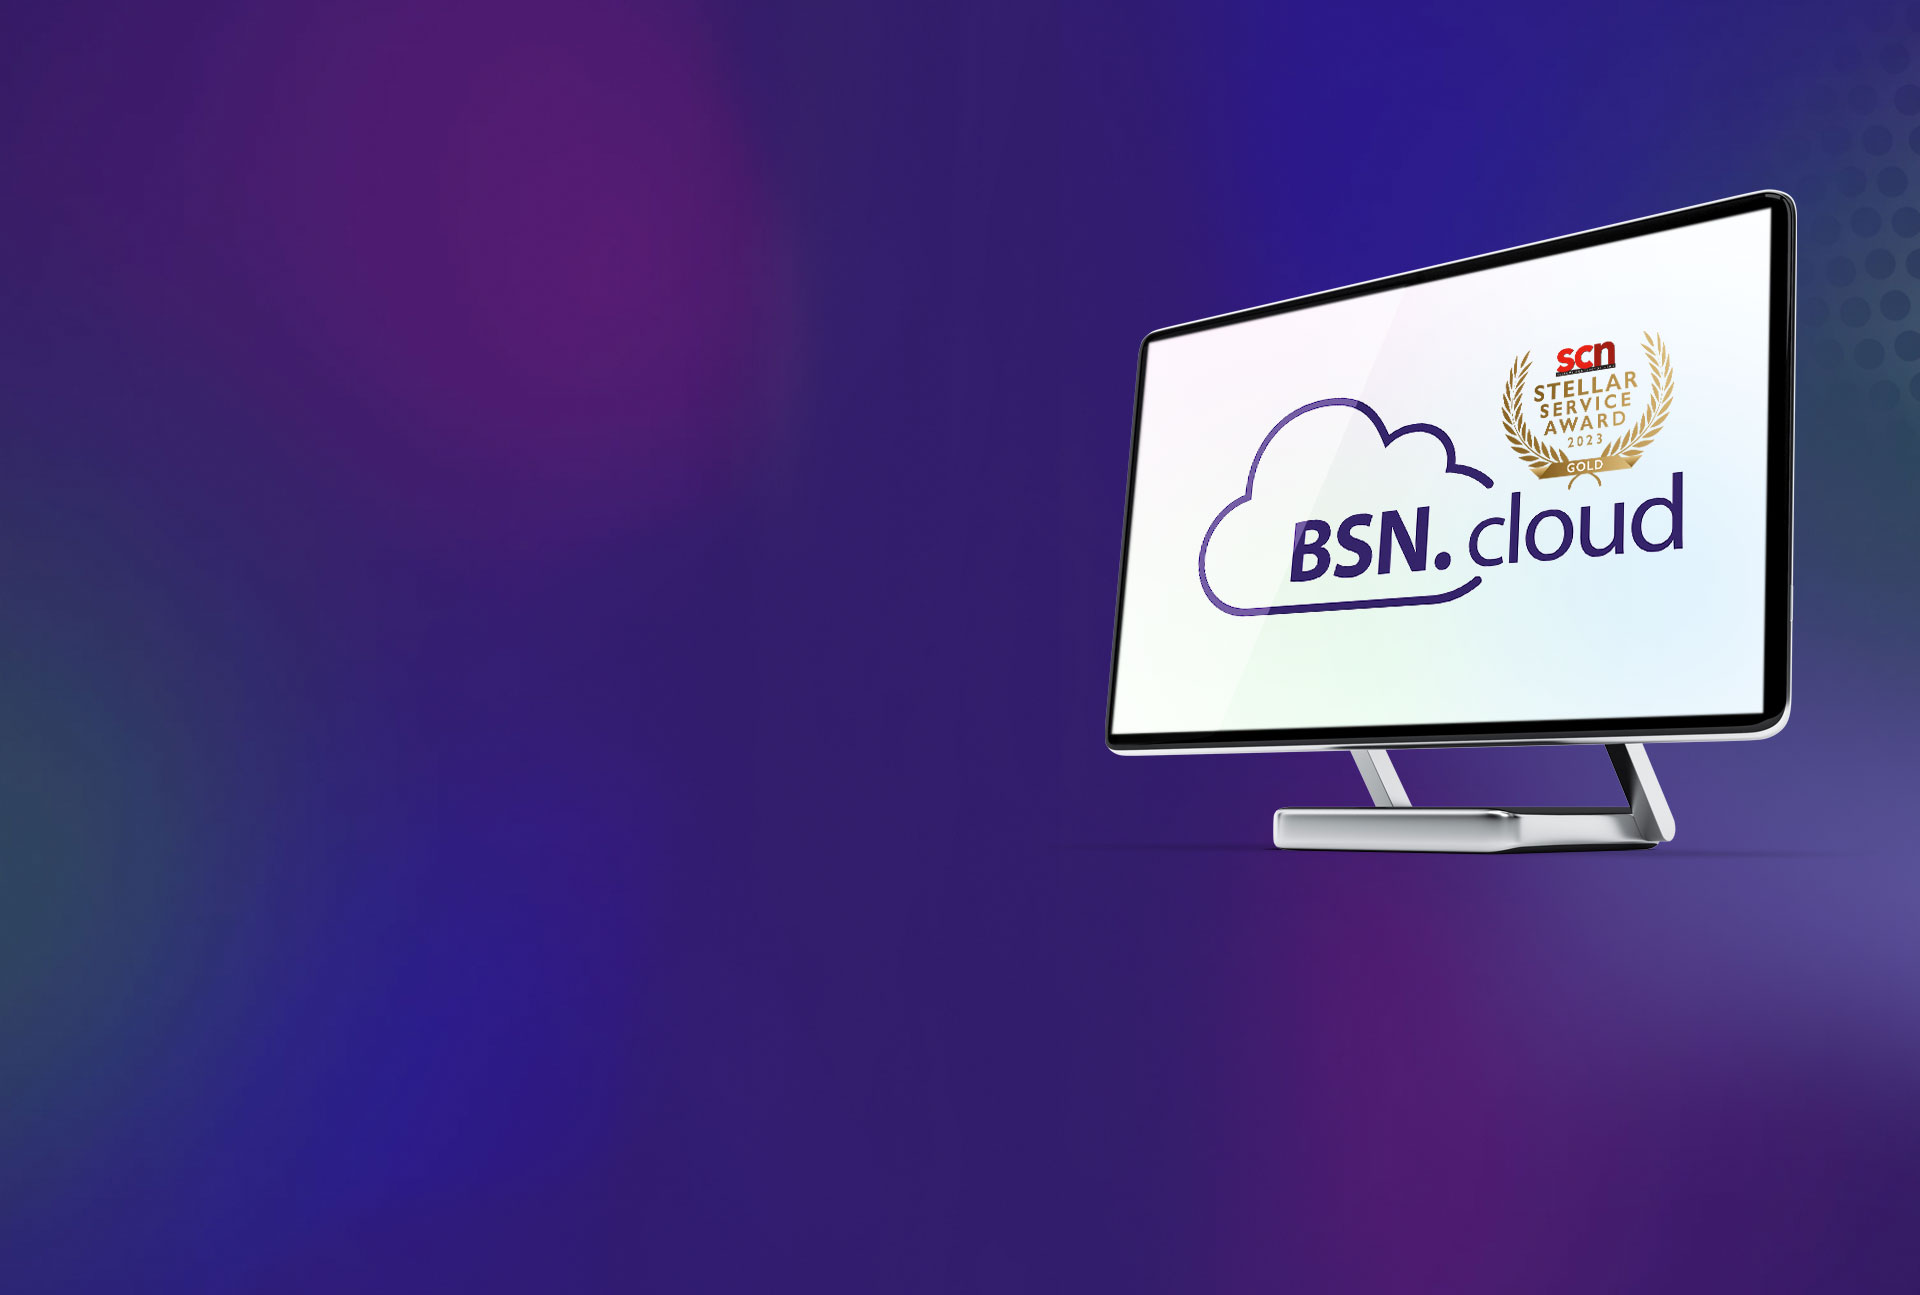 Image de héros du moniteur affichant le logo BSN.cloud